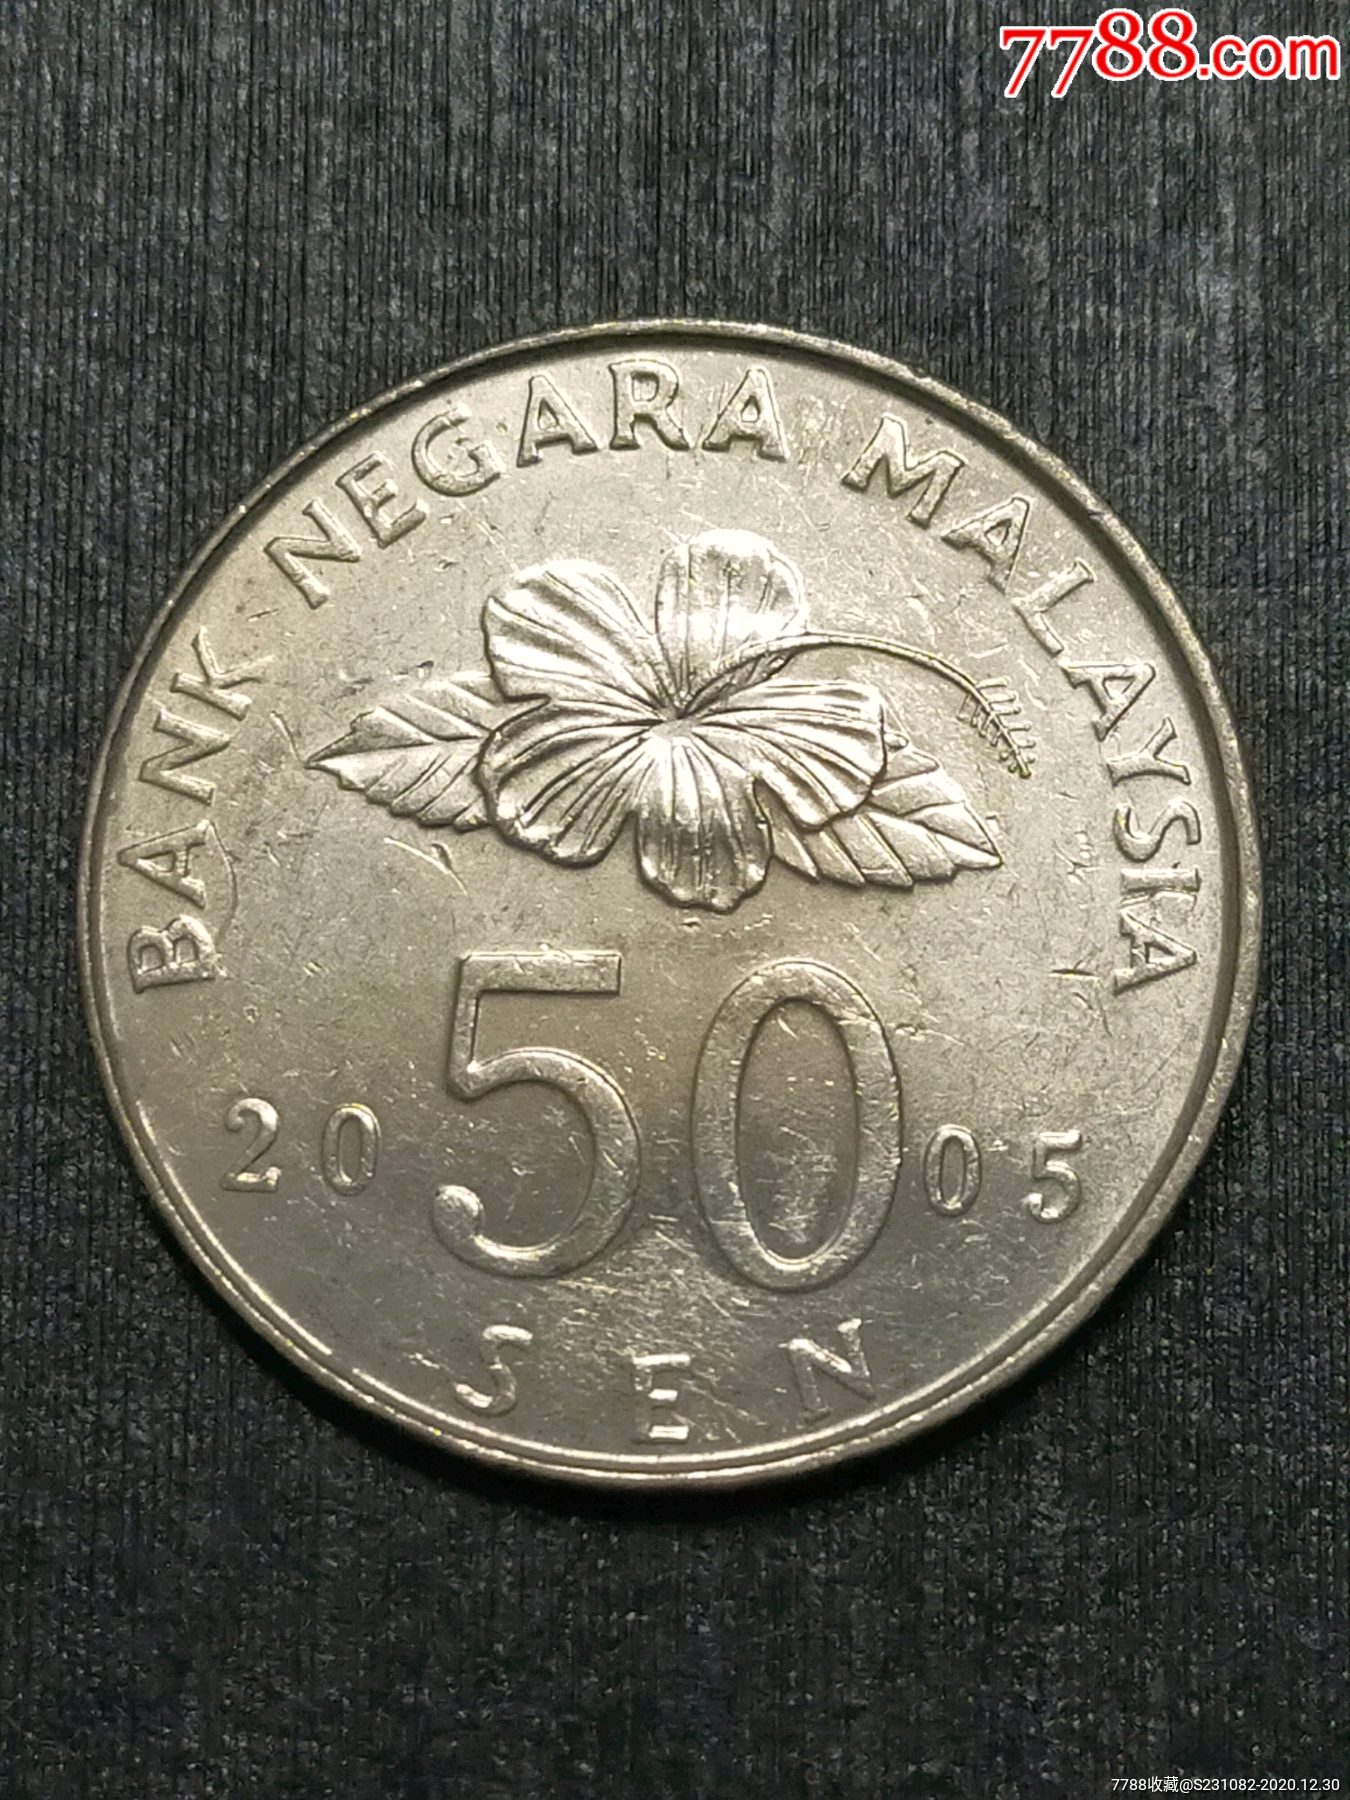 马来西亚币50图片大全图片